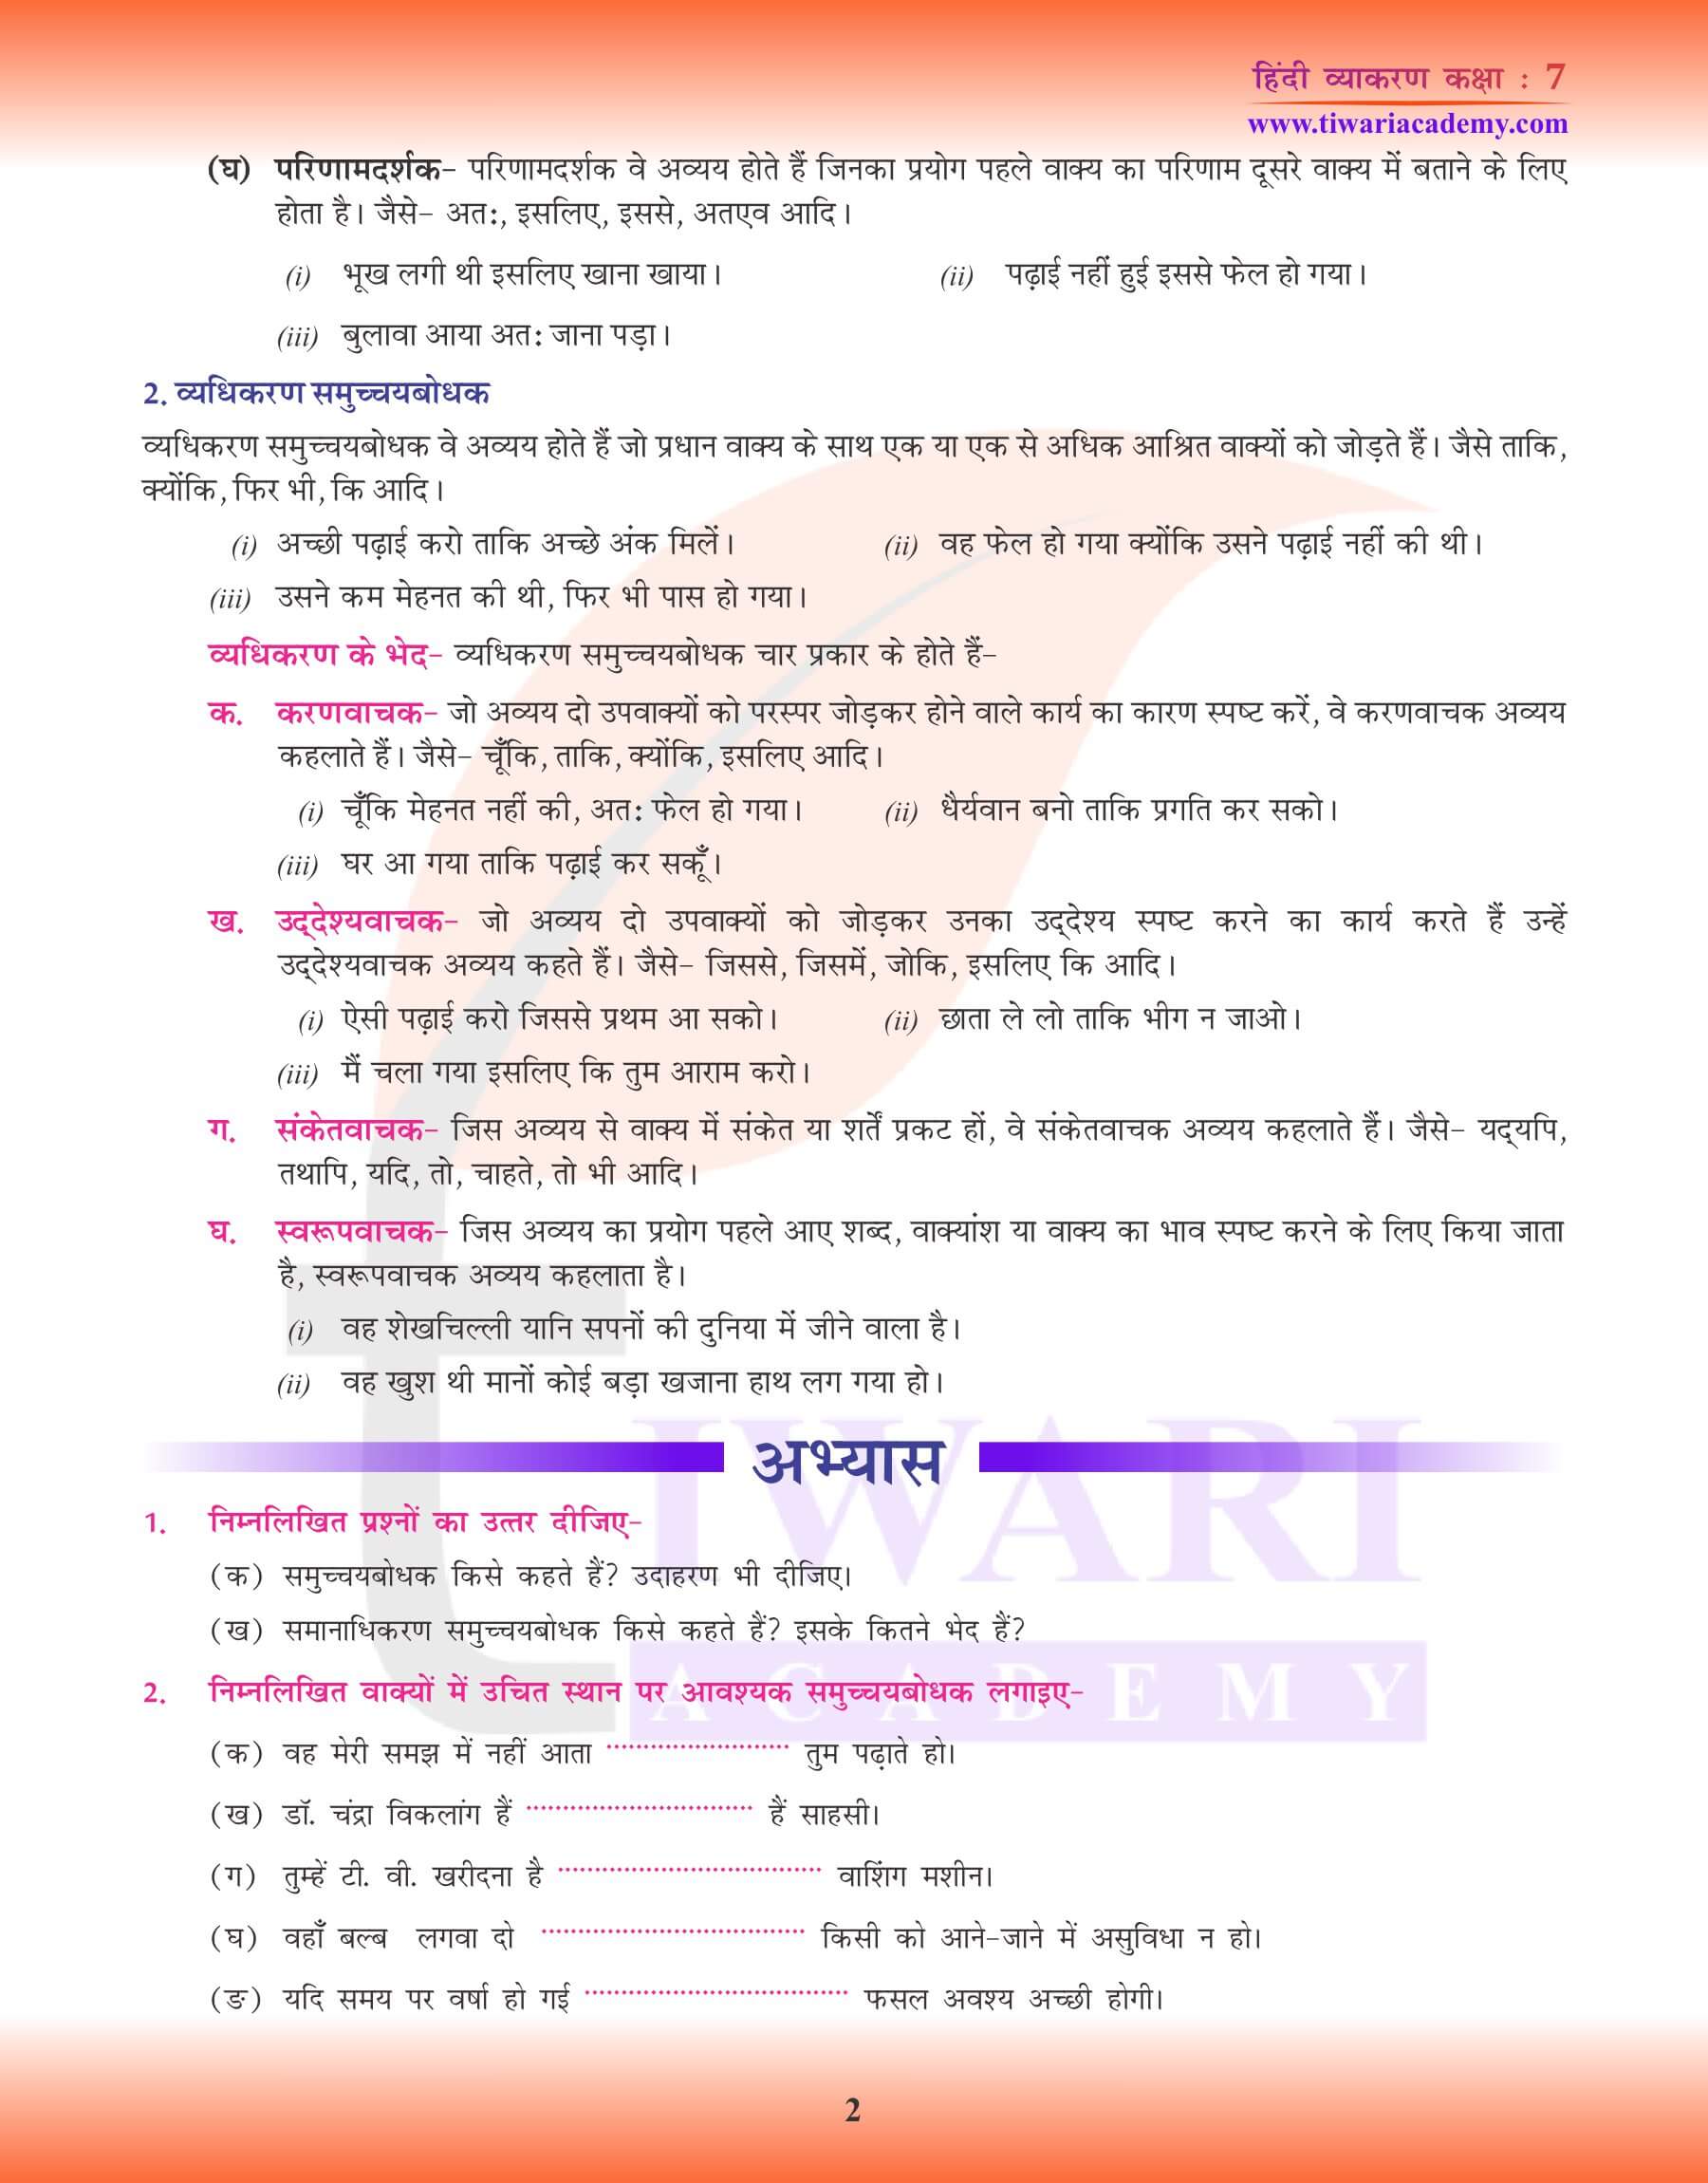 कक्षा 7 हिंदी व्याकरण पाठ 19 समुच्चयबोधक अव्यय